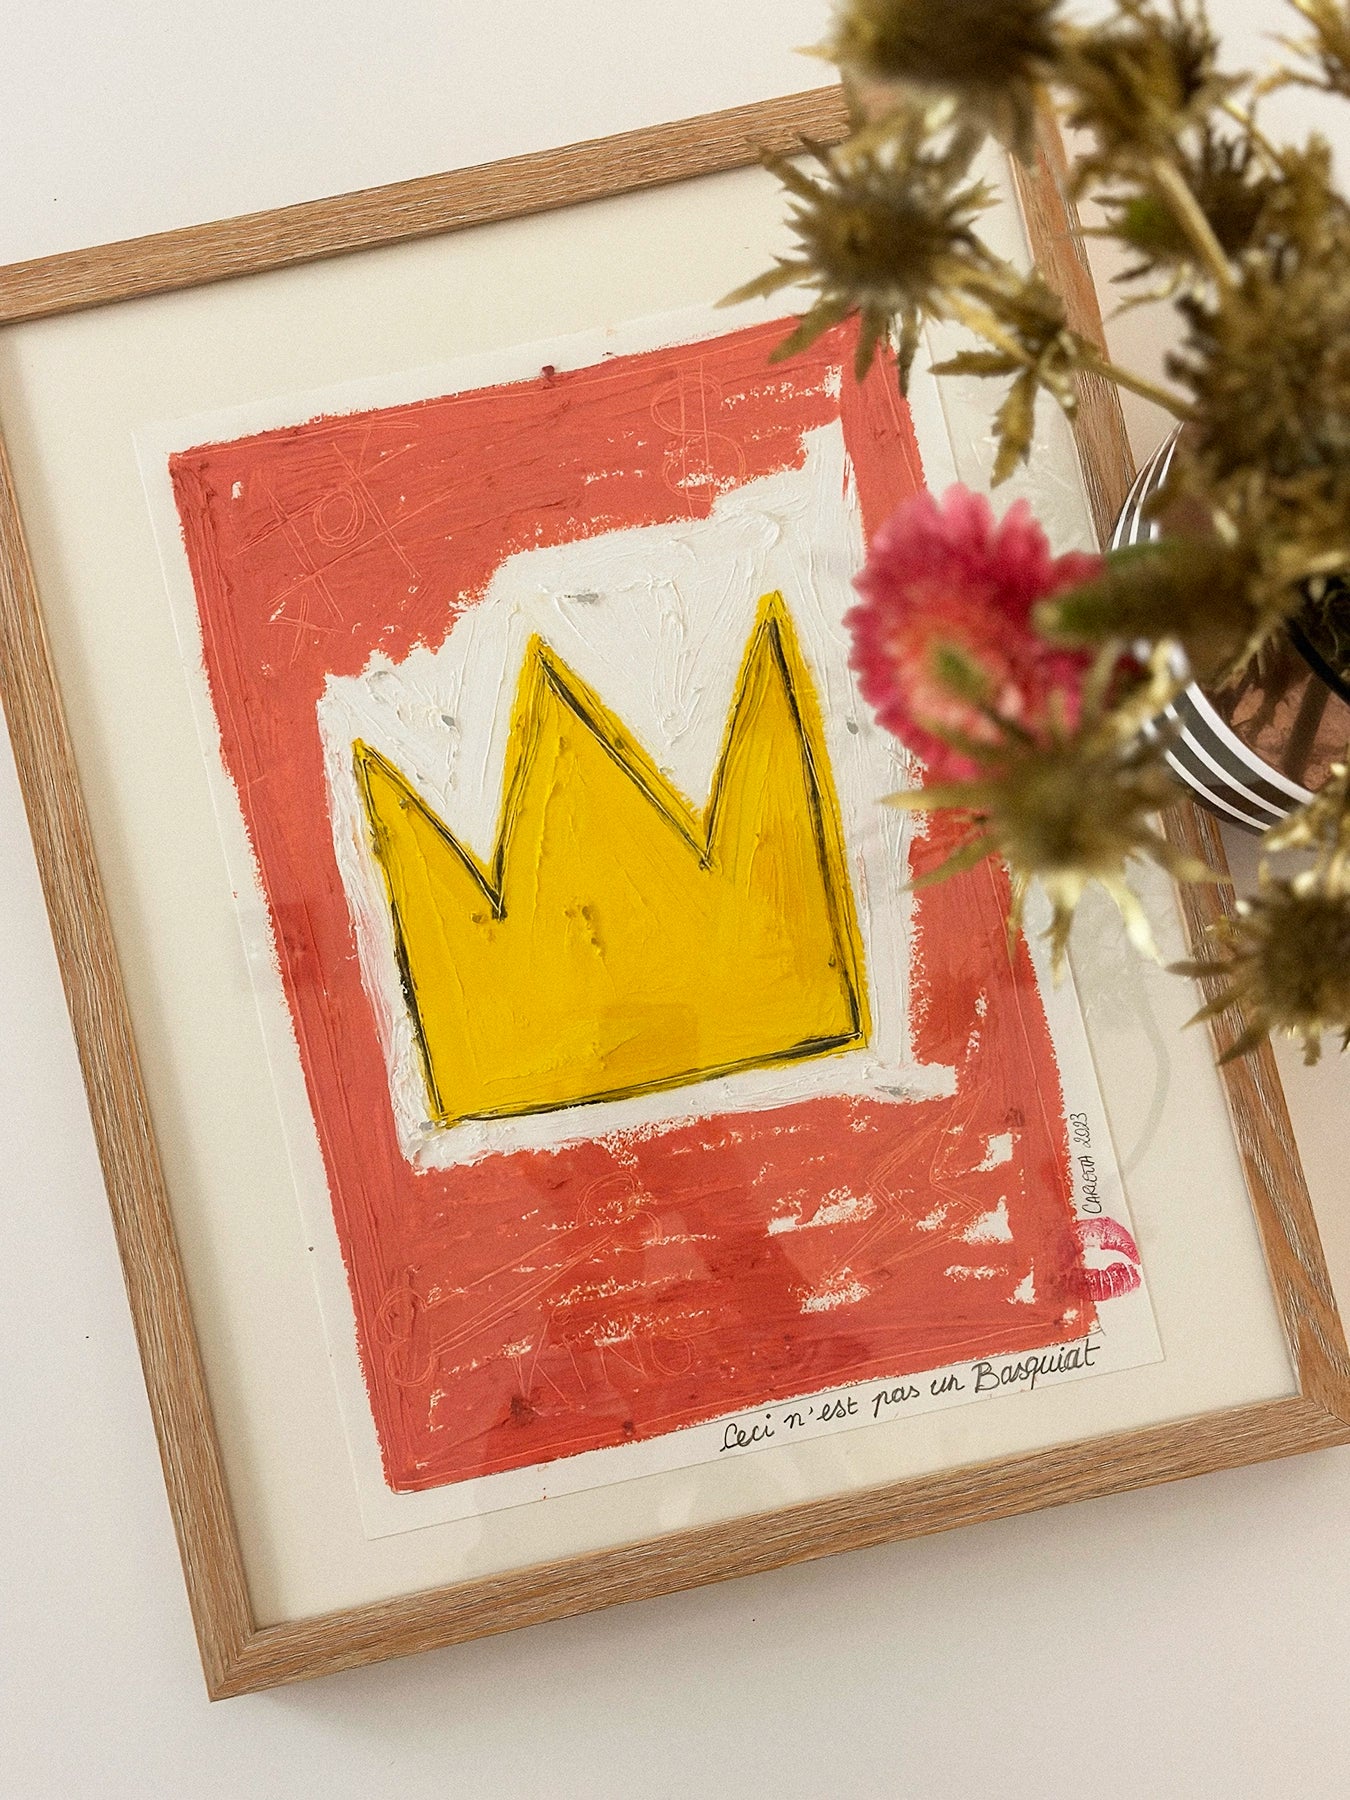 Load image into Gallery viewer, Ceci N&amp;#39;est Pas Un Basquiat
